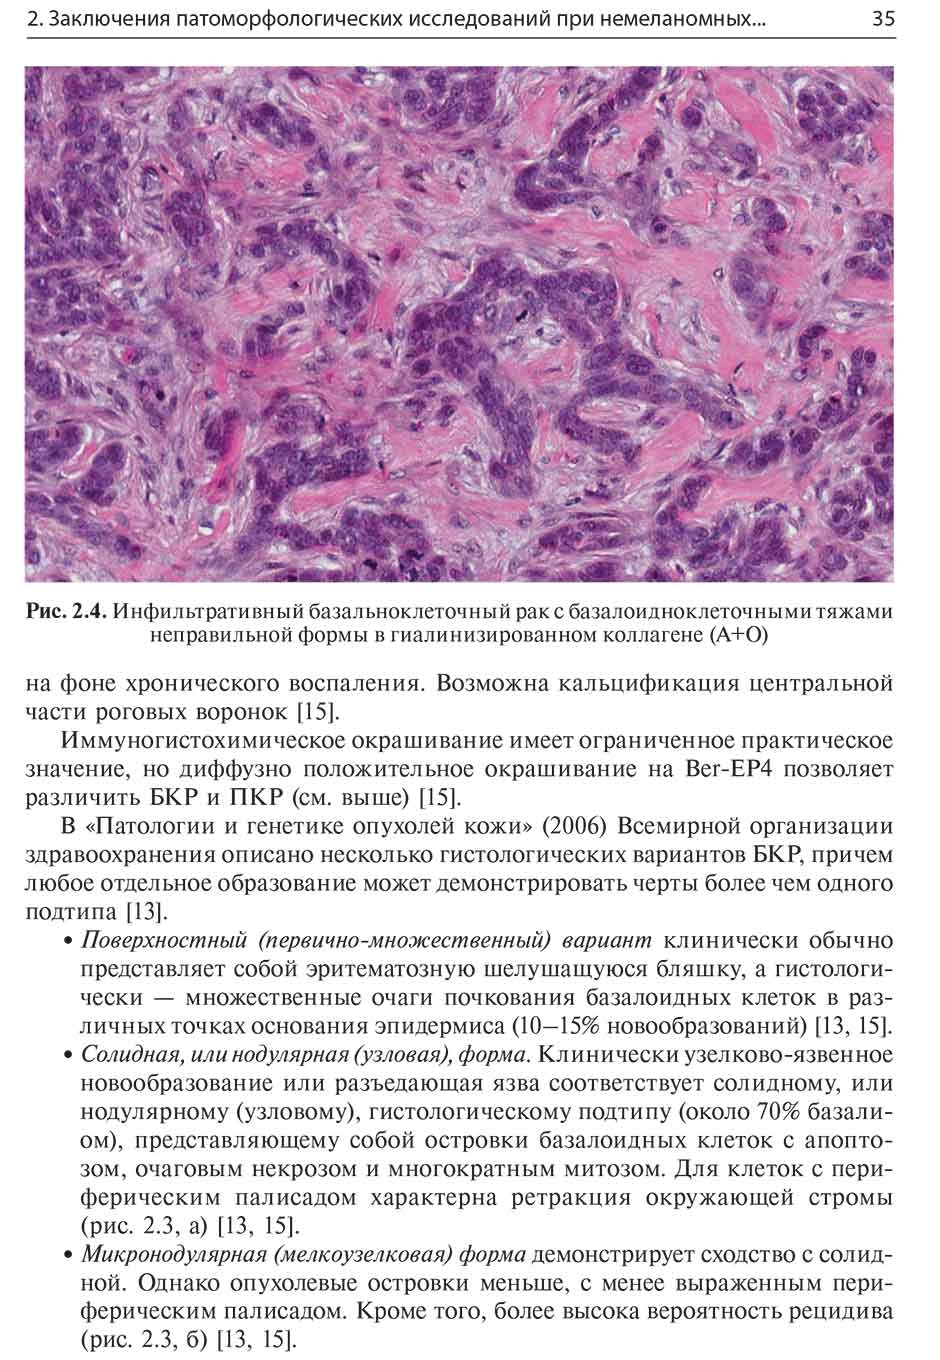 Рис. 2.4. Инфильтративный базальноклеточный раке базалоидноклеточными тяжами неправильной формы в гиалинизированном коллагене (А+О)